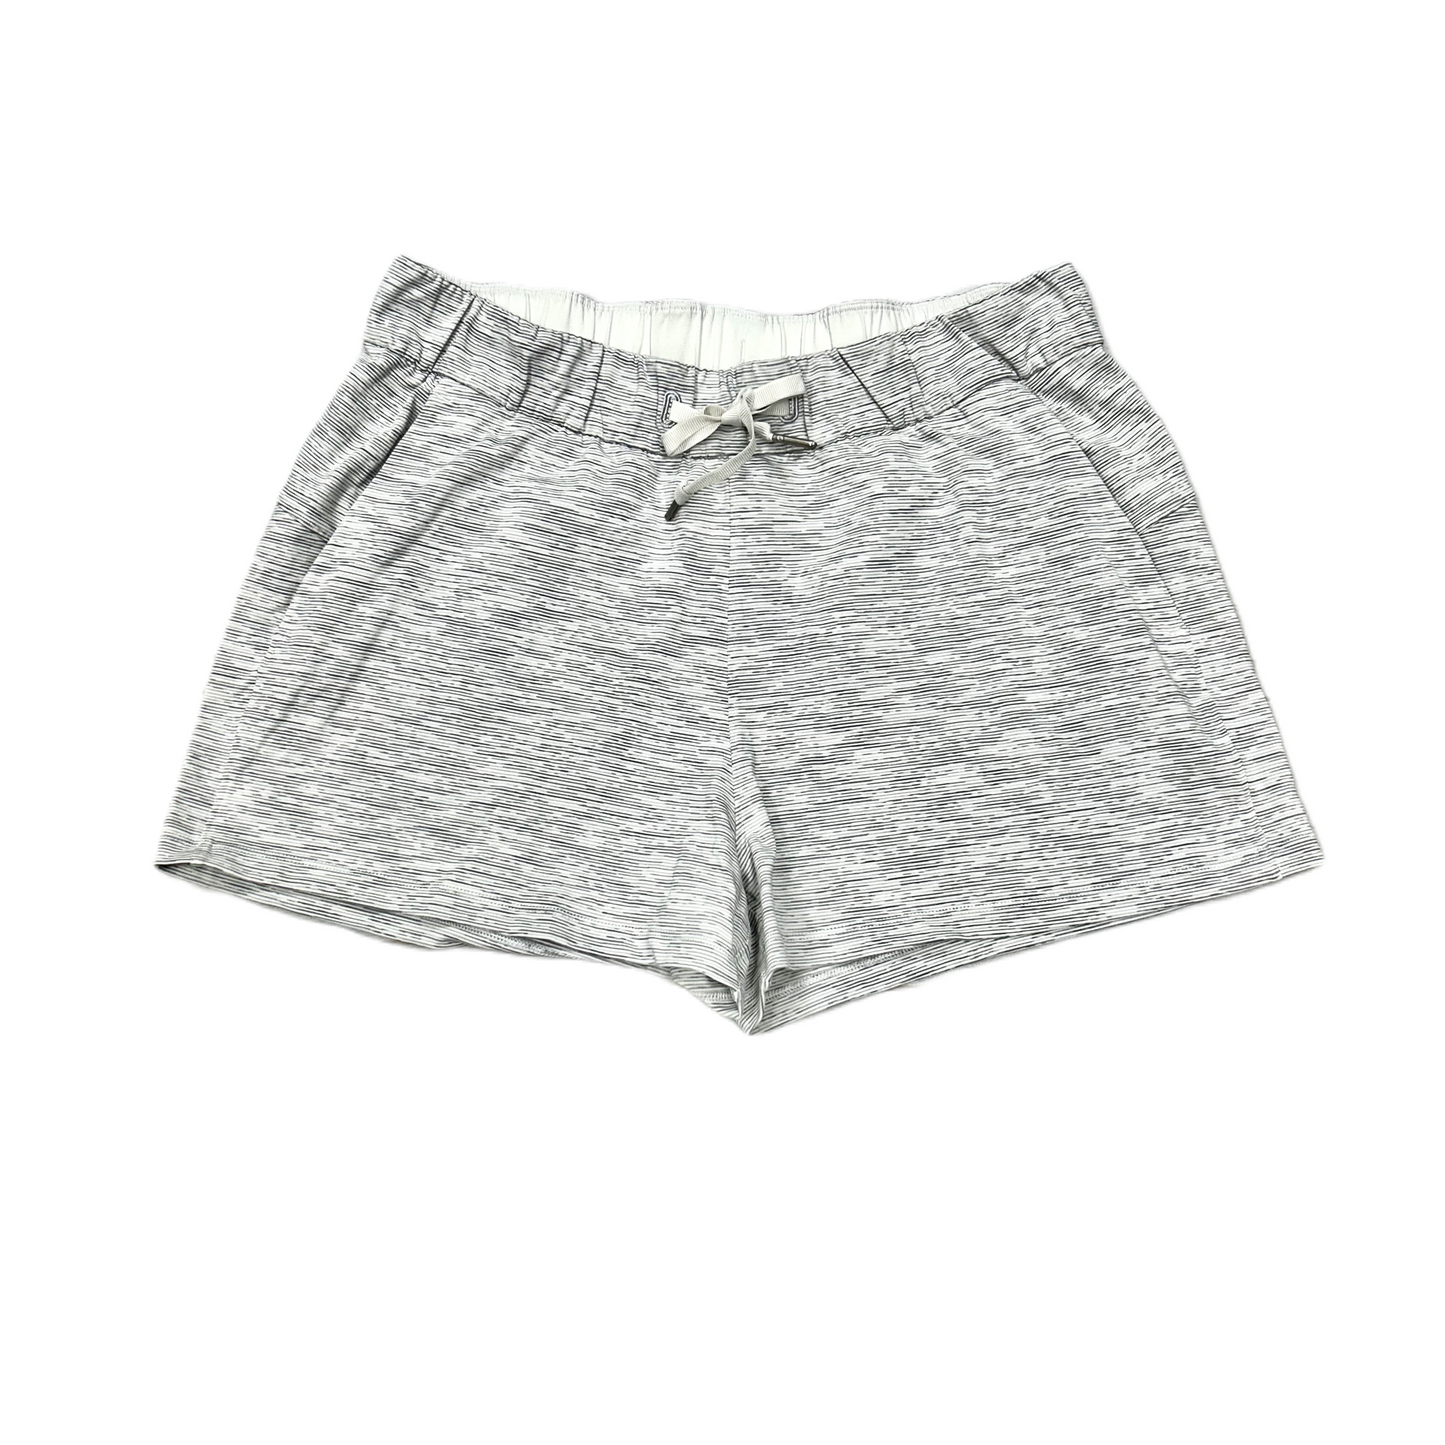 Grey Athletic Shorts By Lululemon, Size: M